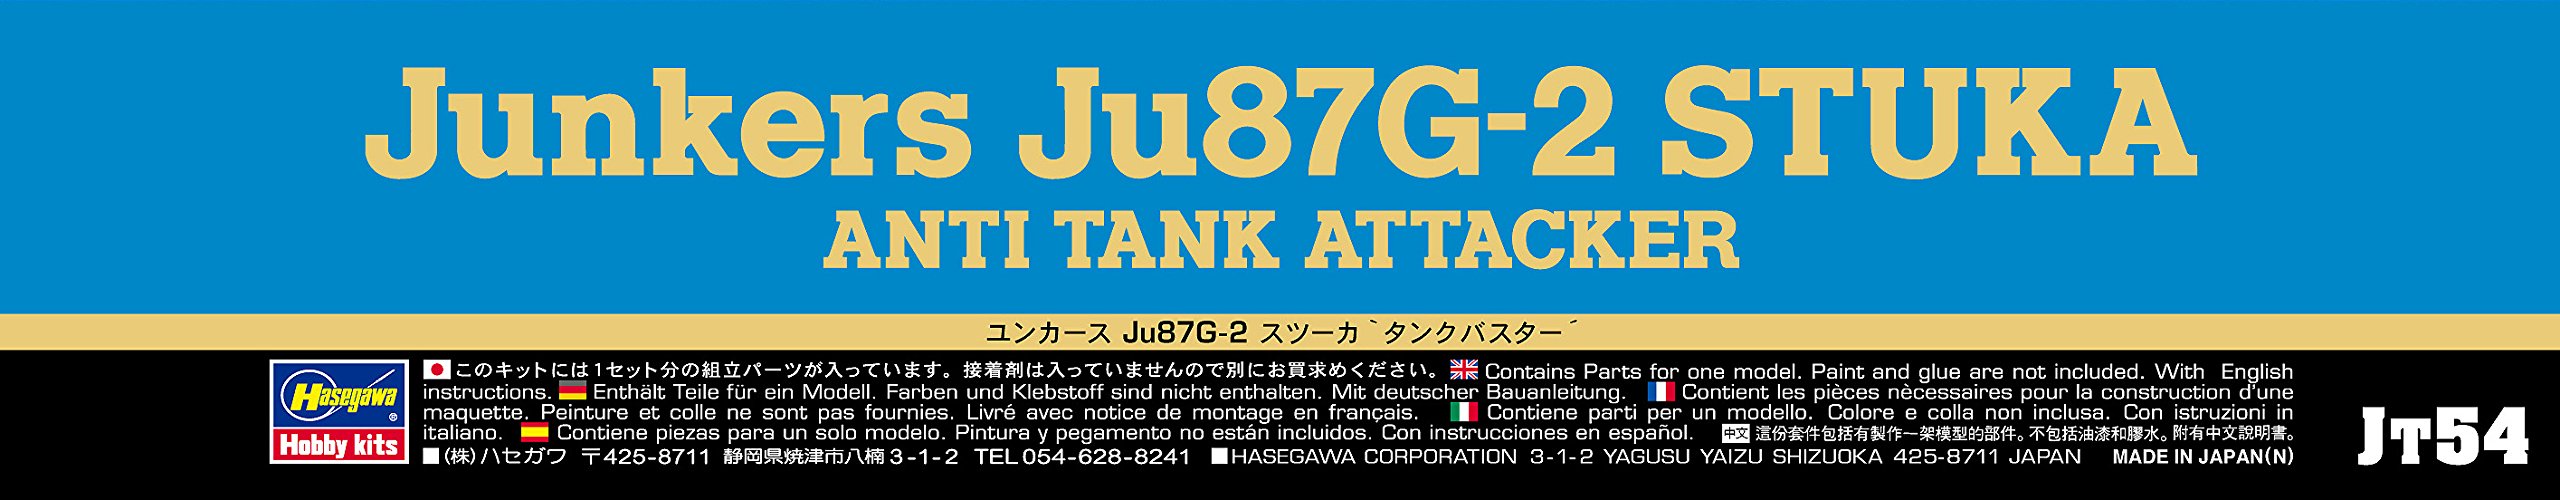 HASEGAWA 1/48 Junkers Ju87G-2 Stuka Anti Tank Attacker Plastic Model